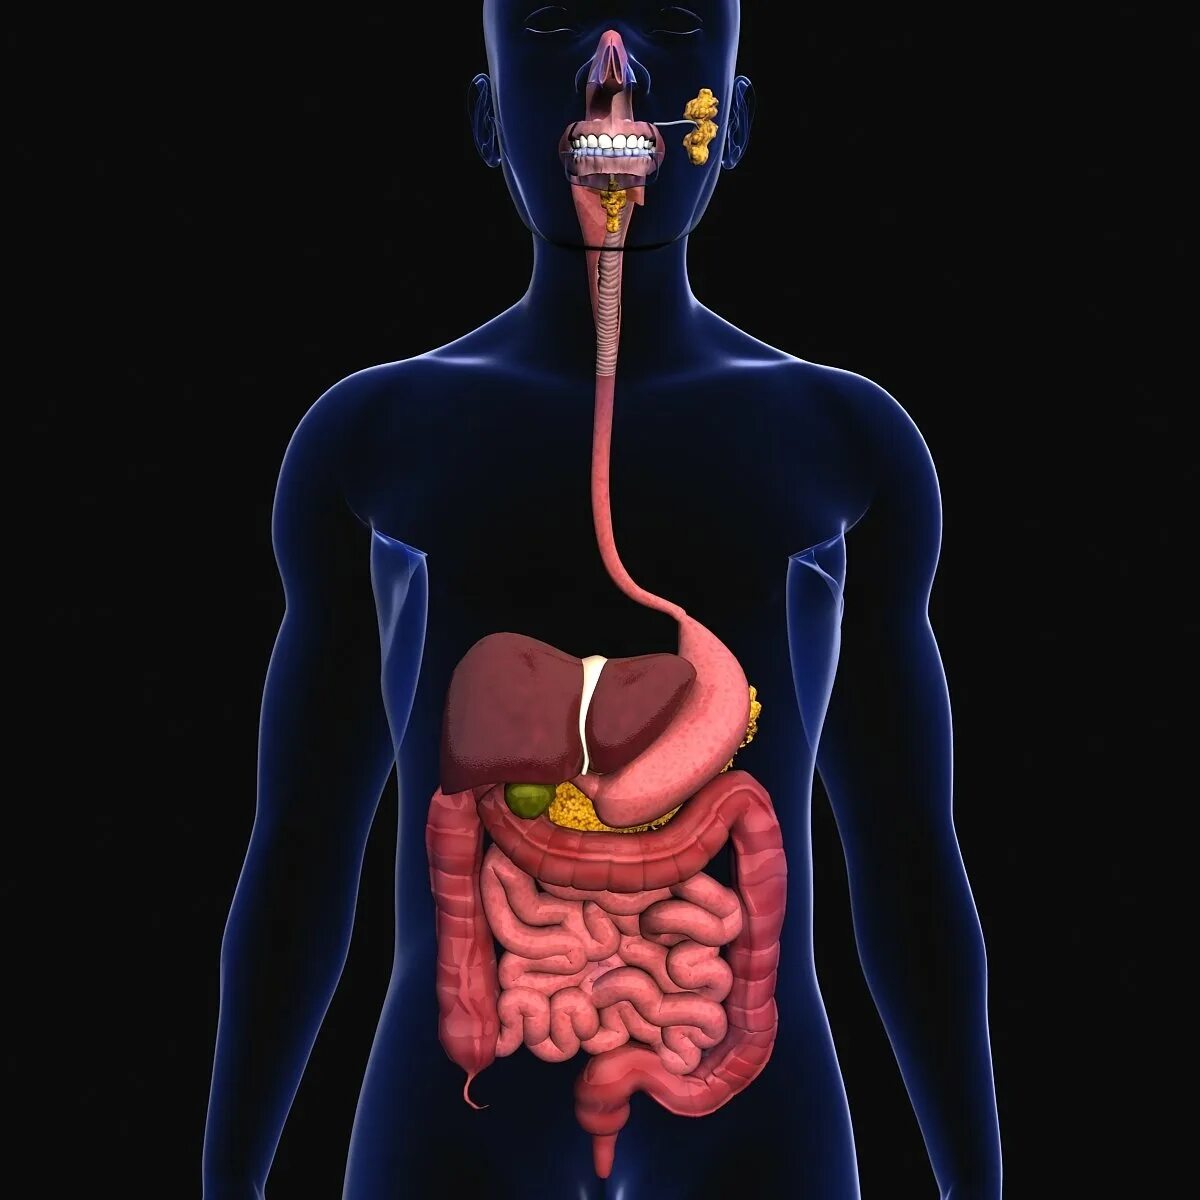 Пищеварительная система анатомия 3д модель. Органы пищеварительной системы 3д. 3 Пищеварительной системы анатомия. Анатомия ЖКТ человека в 3д. Легкое переваривание пищи